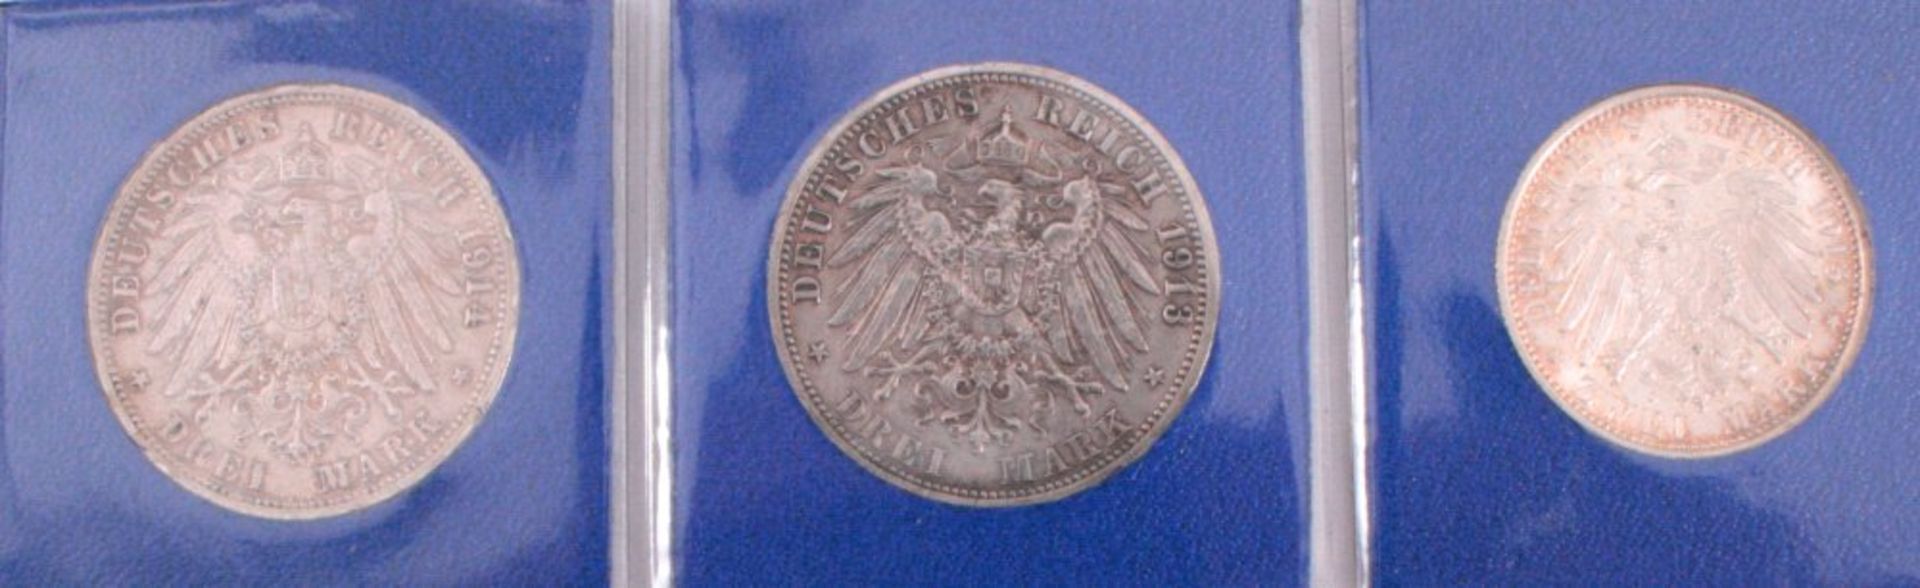 3 Münzen Kaiserreich, Preußen2 x 3 Mark Silber 1913 A, 25jähriges Regierungsjubiläum,J. 112 1913, - Bild 2 aus 2